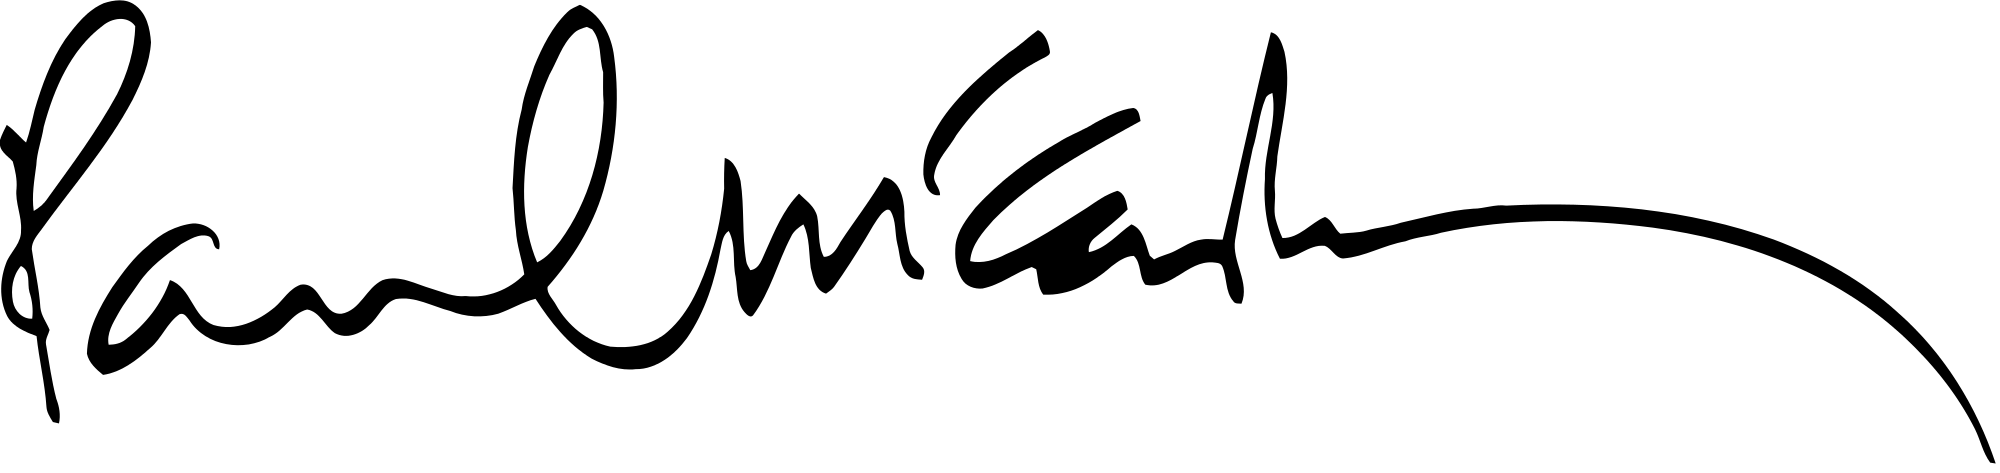 Paul Mc Cartney Signature SVG Clip arts